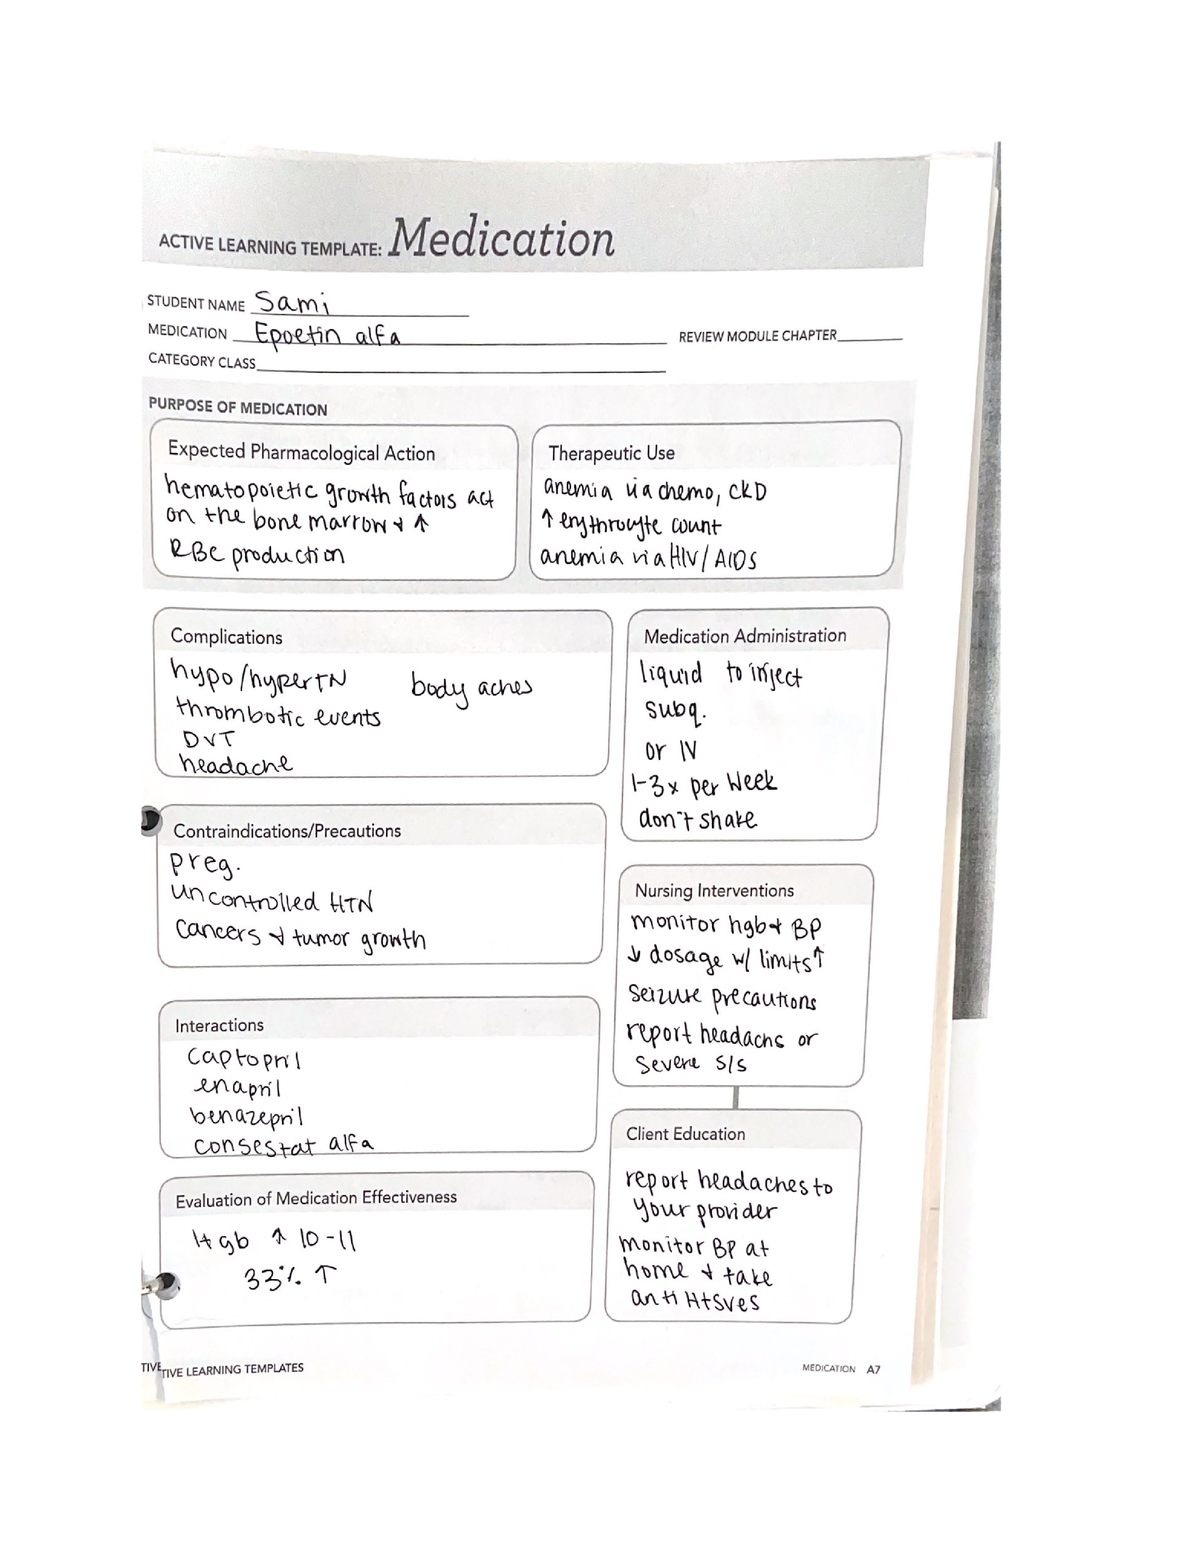 epoetin-alfa-medication-template